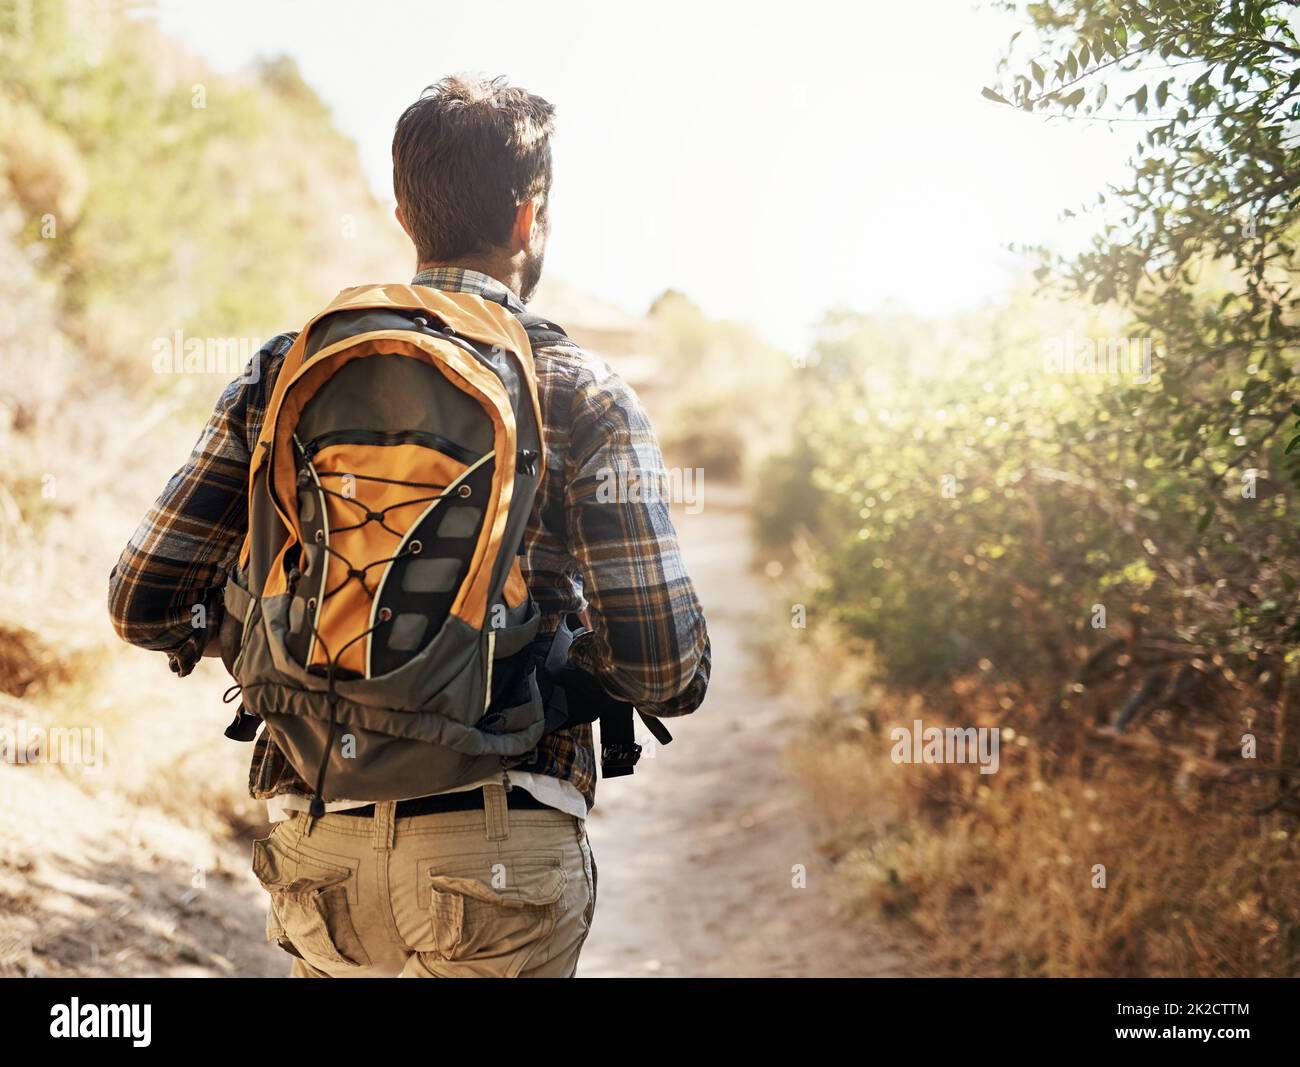 Nel deserto. Foto di un uomo irriconoscibile che fa escursioni in montagna. Foto Stock